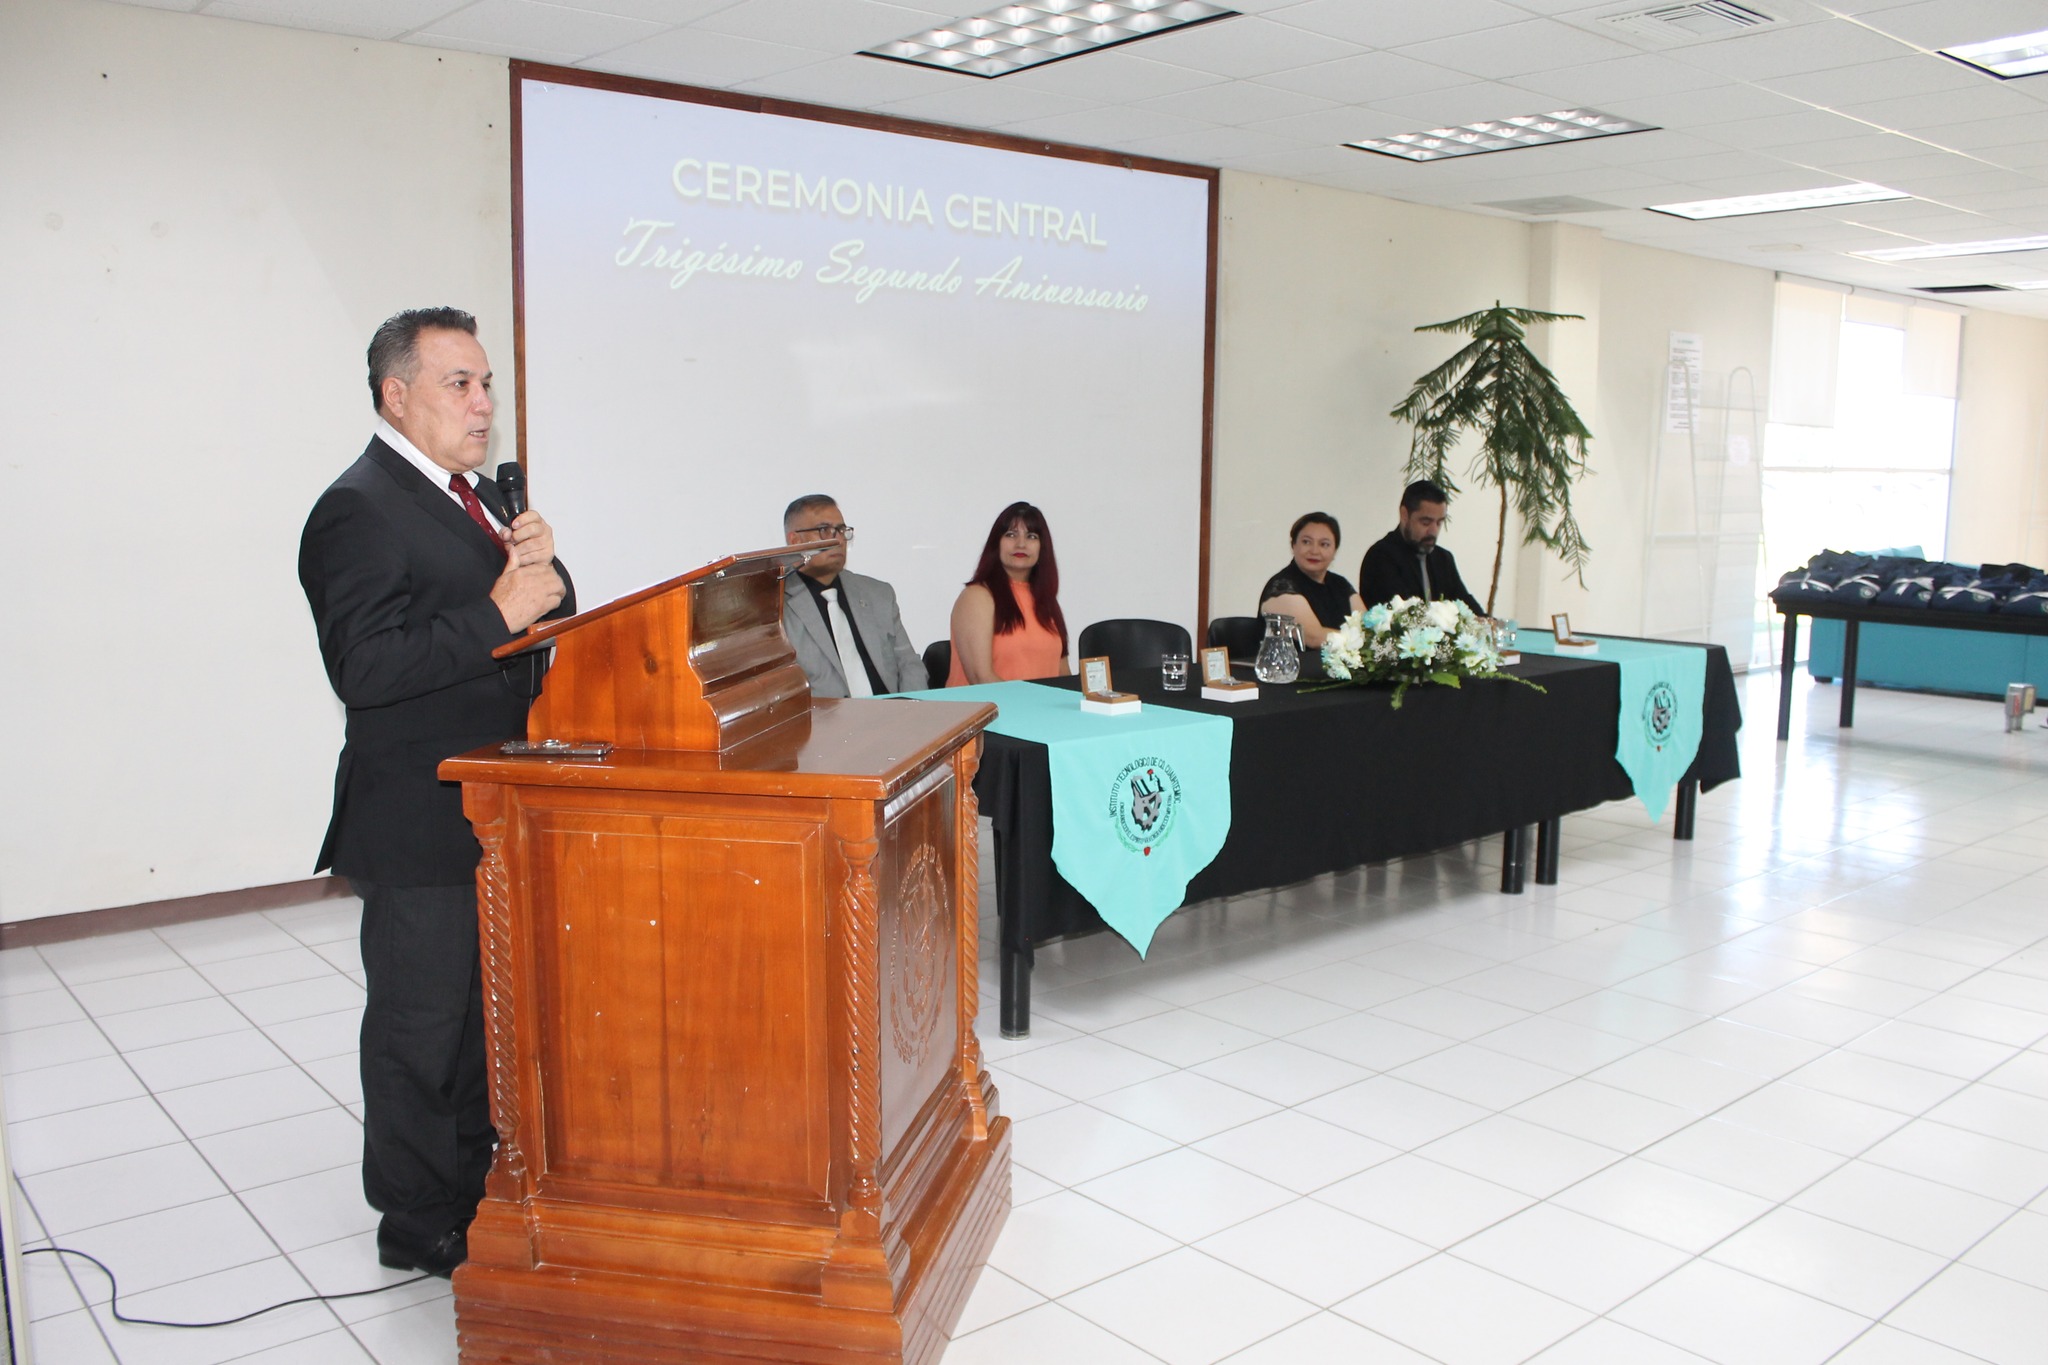 Celebra el Instituto Tecnológico de Ciudad Cuauhtémoc la ceremonia oficial del XXXII Aniversario